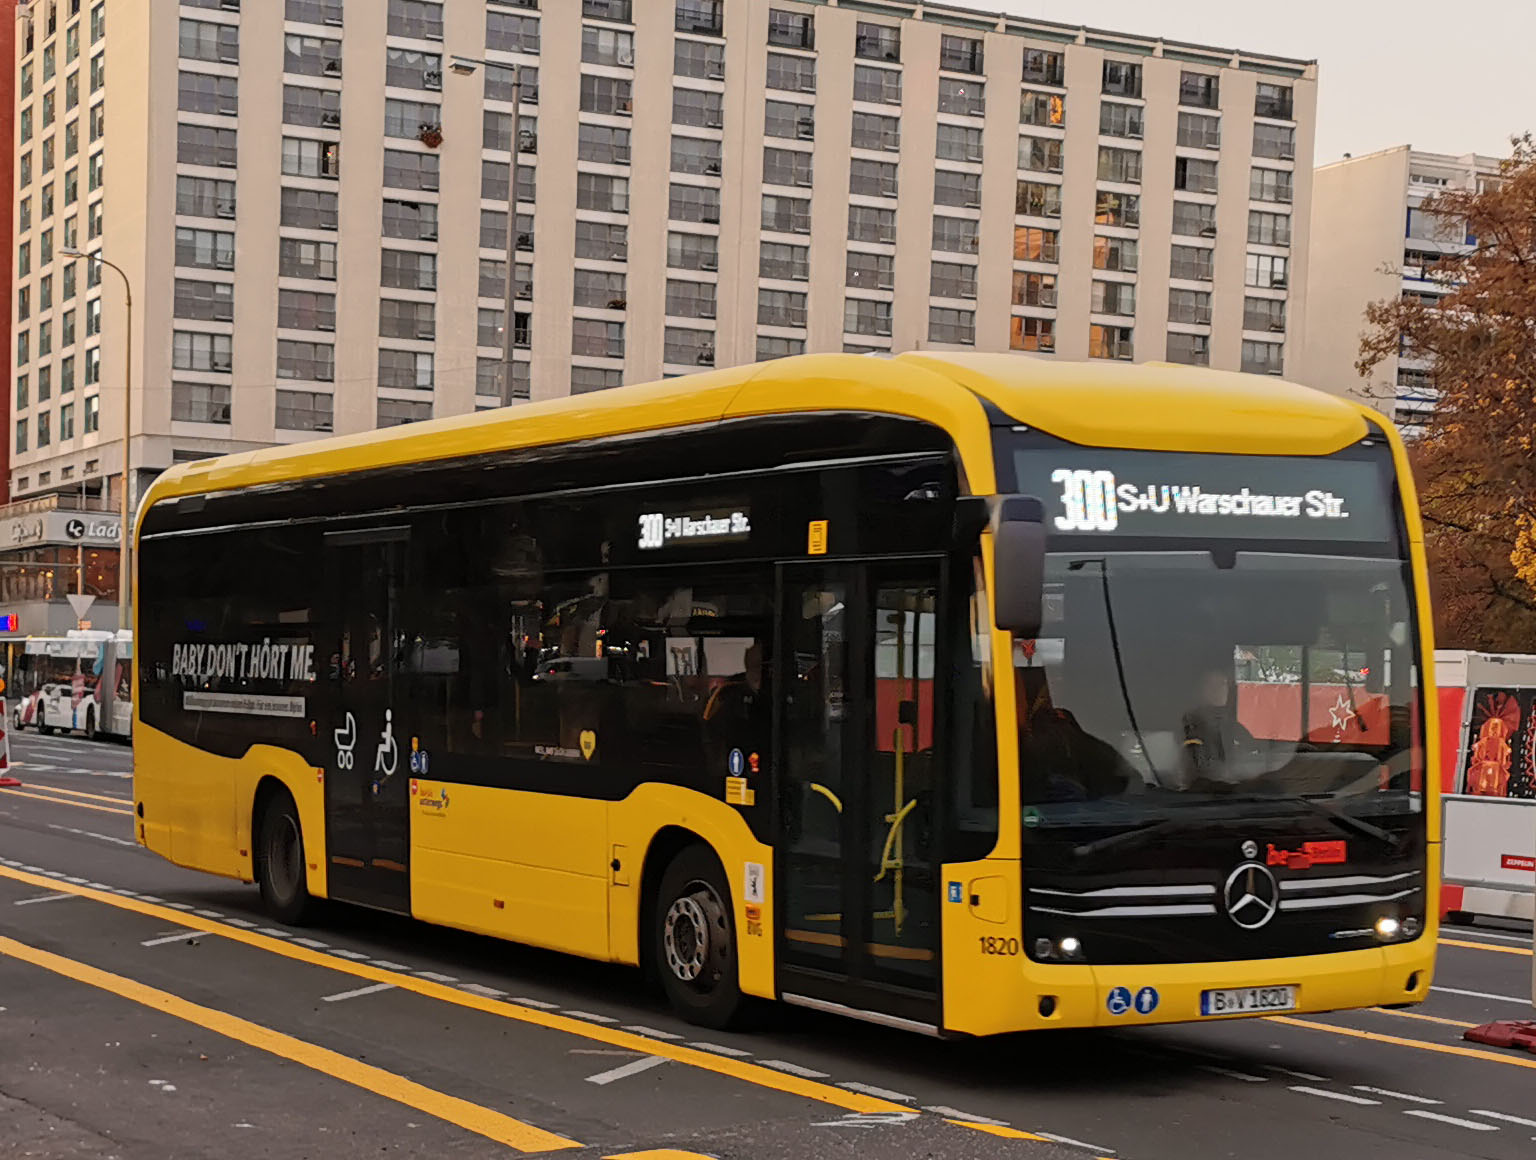 Foto: Bus 1801, Typ MB EN 19, Spandauer Str., November 2019